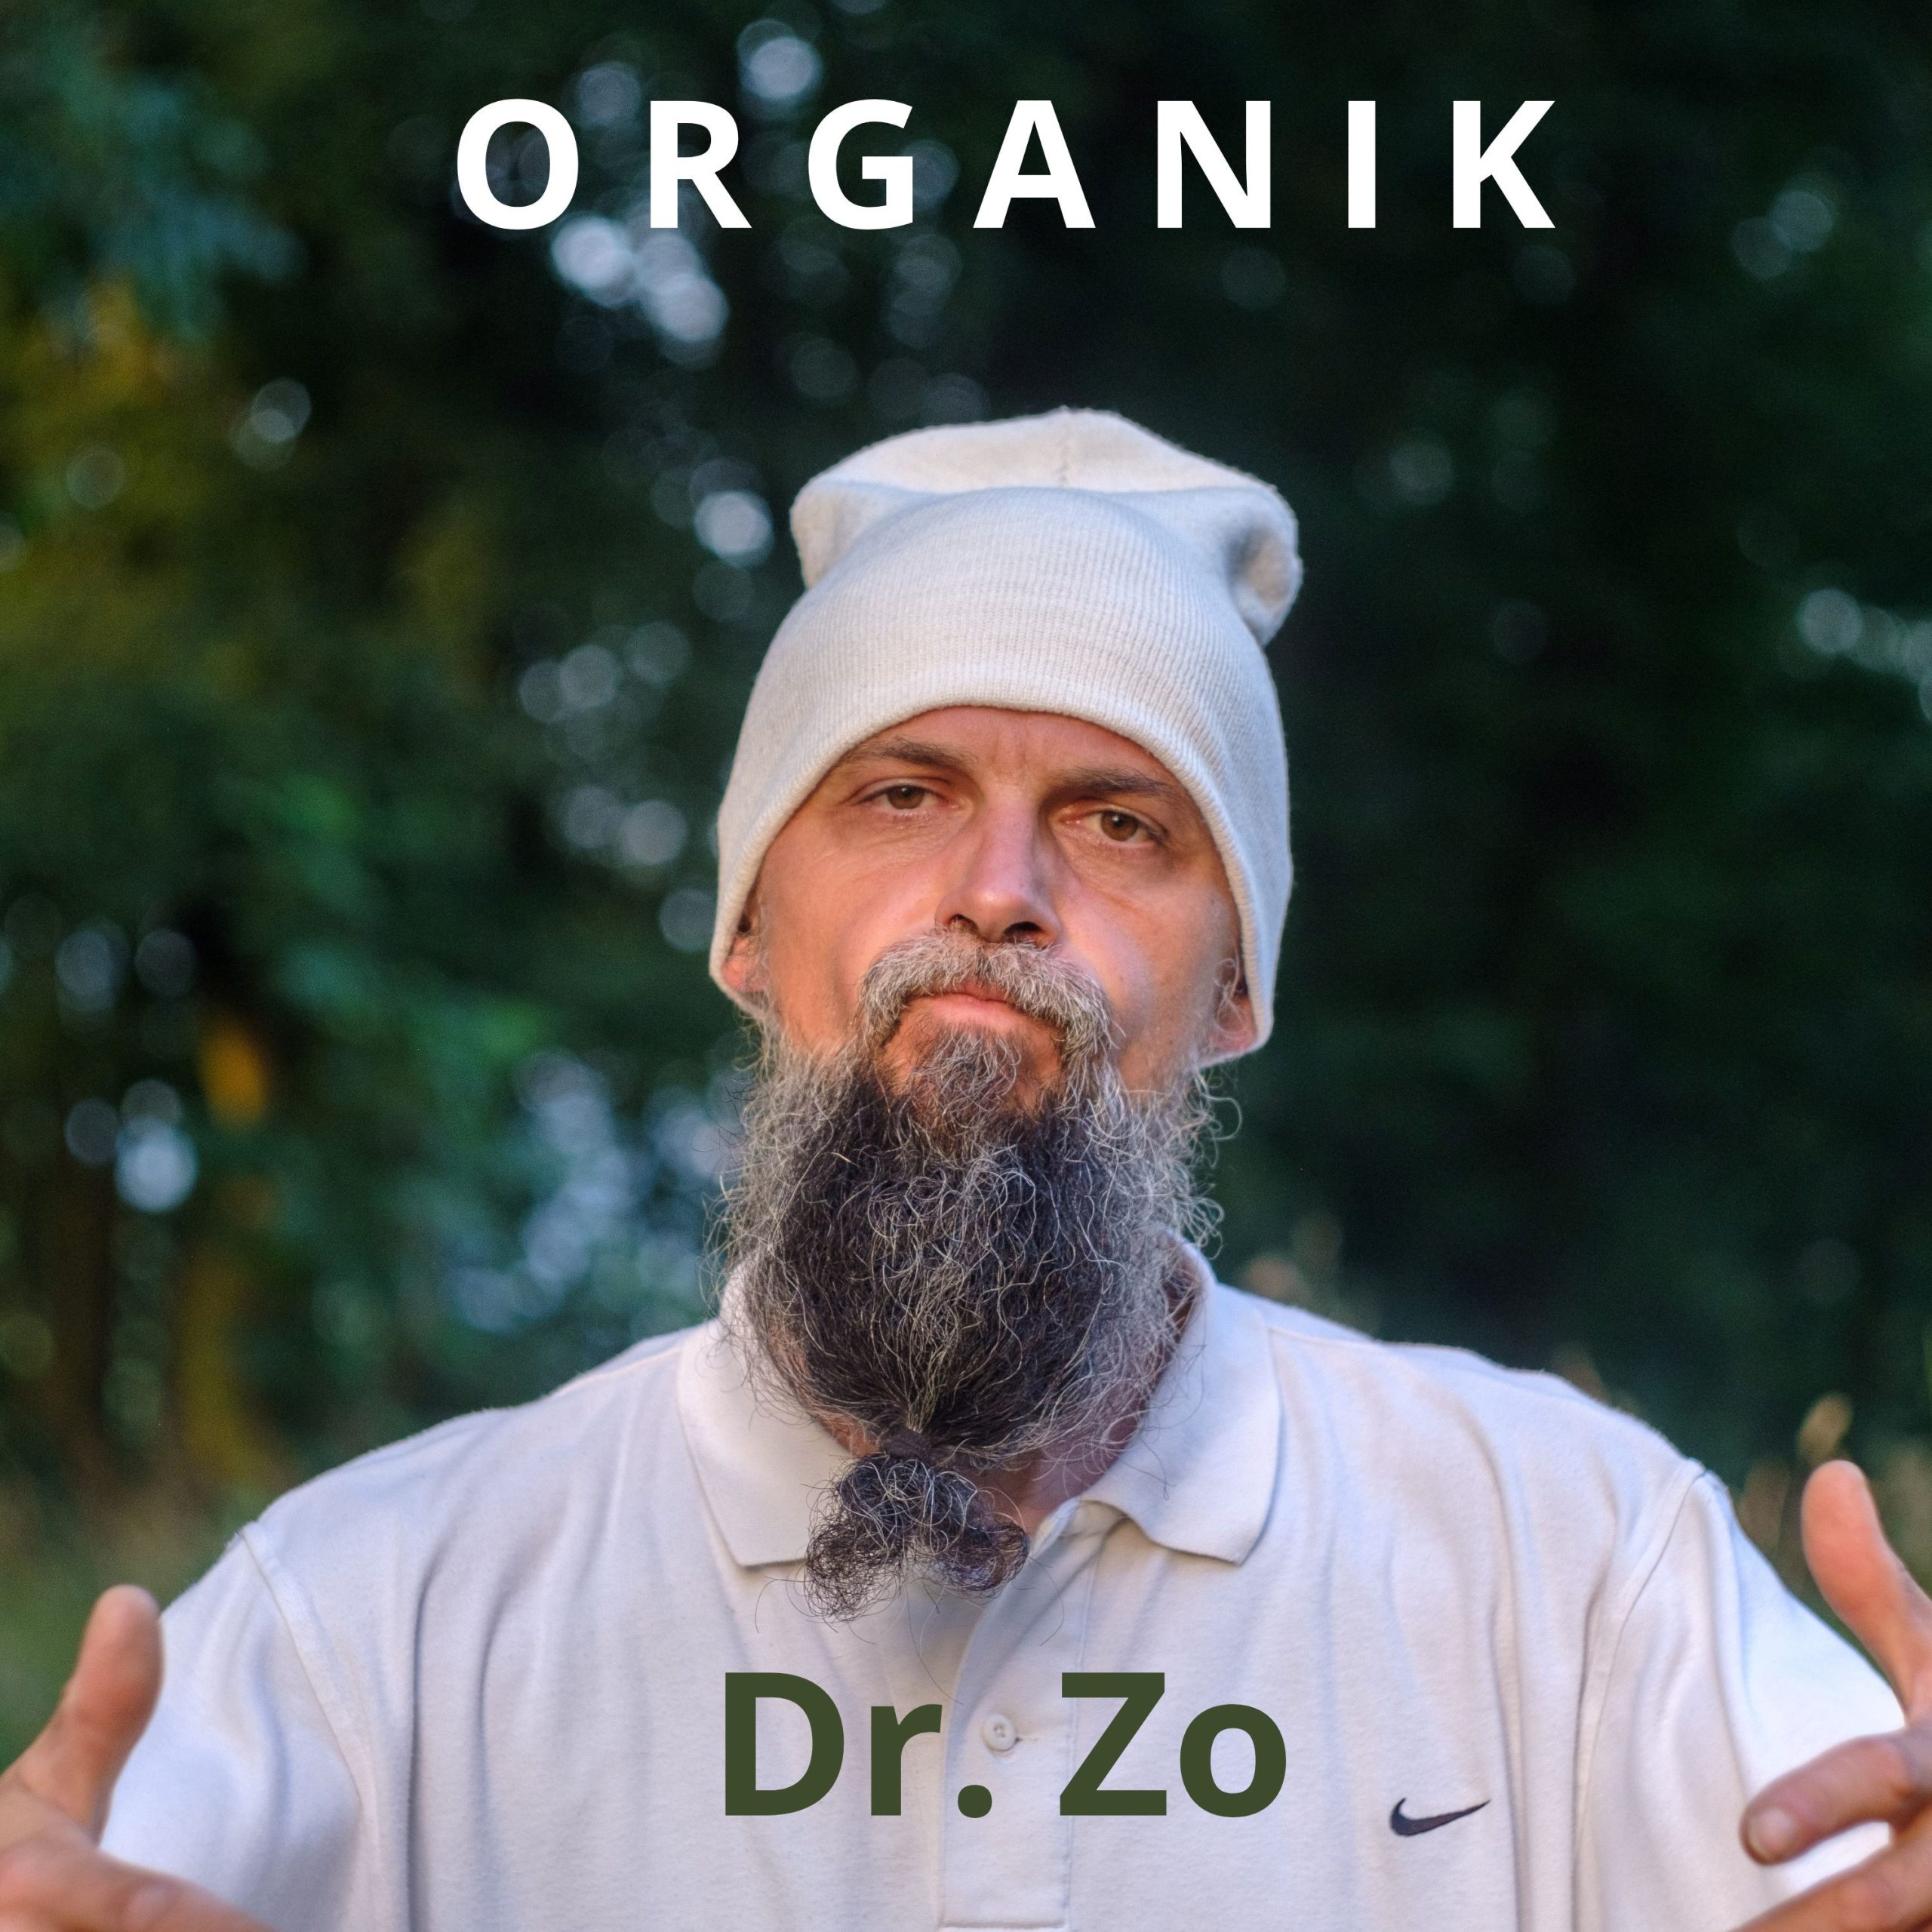 Dr. Zo : Novi singl i sjajan videospot ‘Organik’